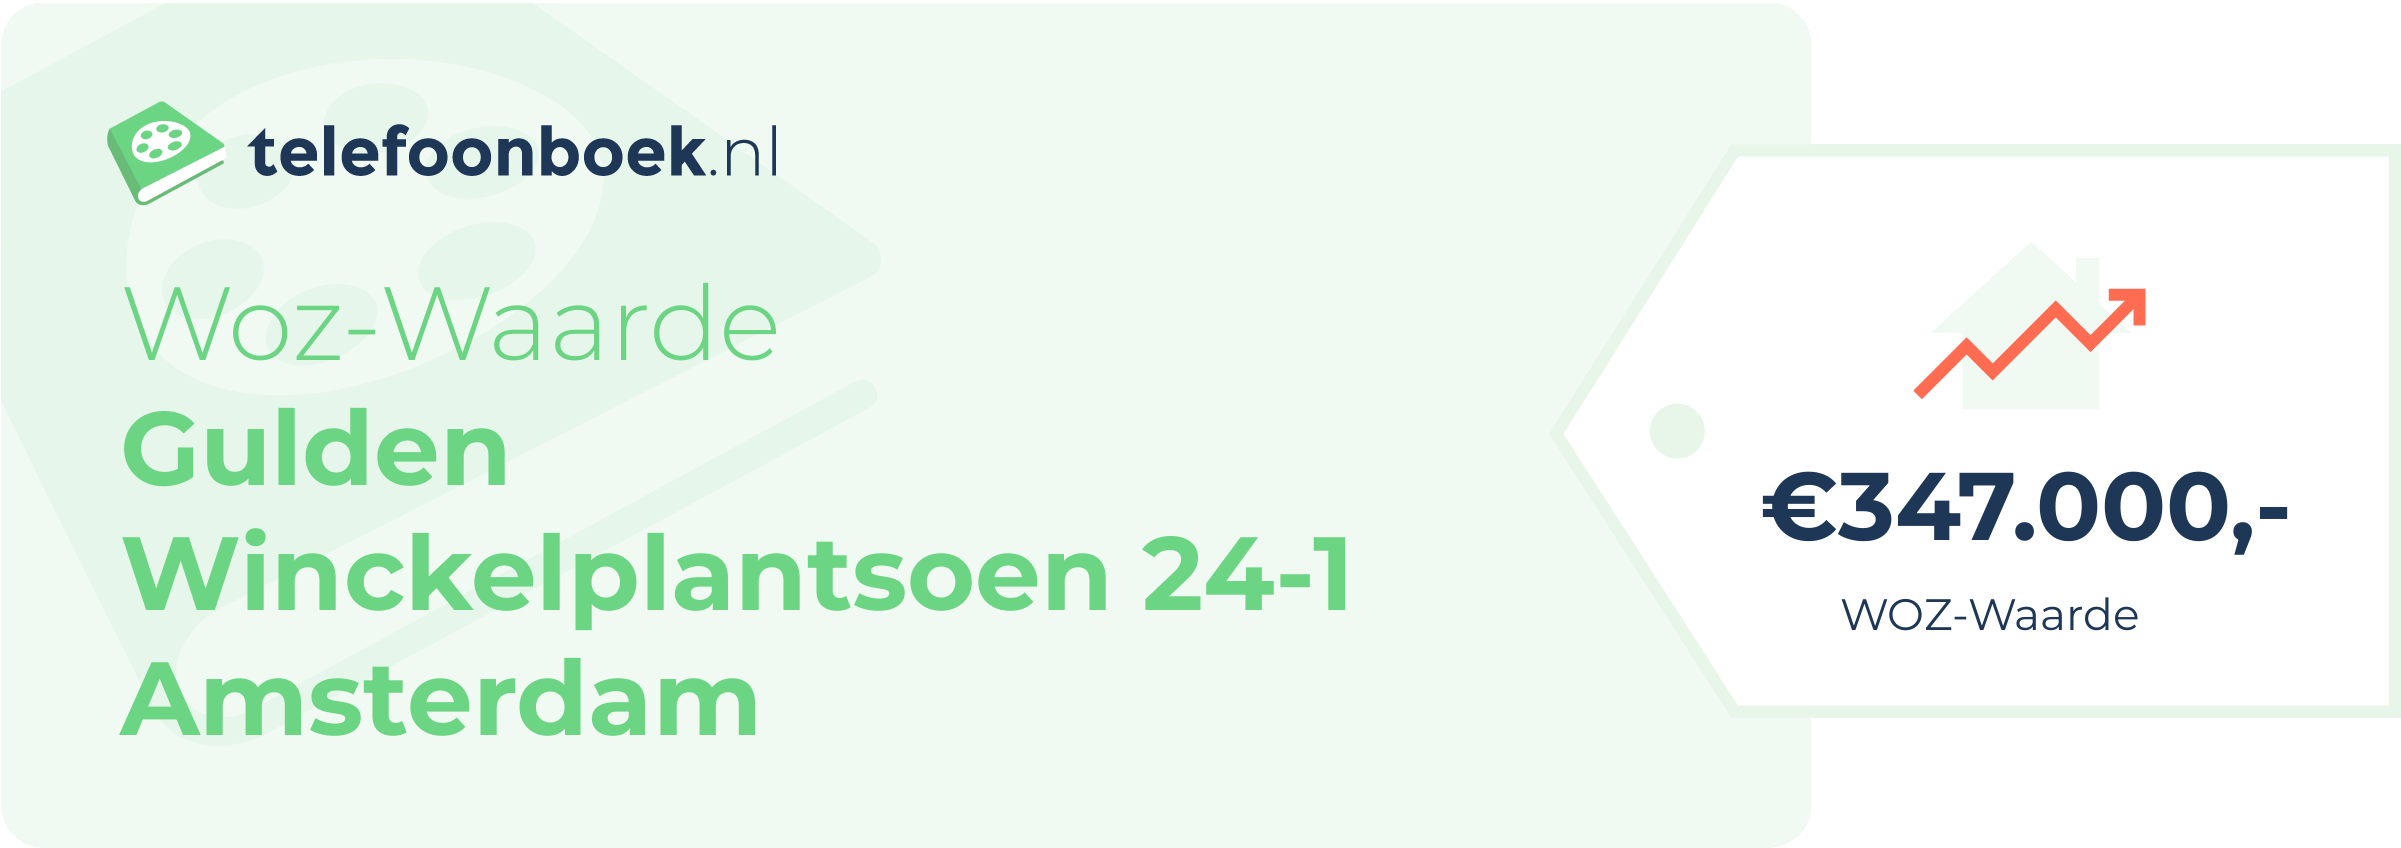 WOZ-waarde Gulden Winckelplantsoen 24-1 Amsterdam